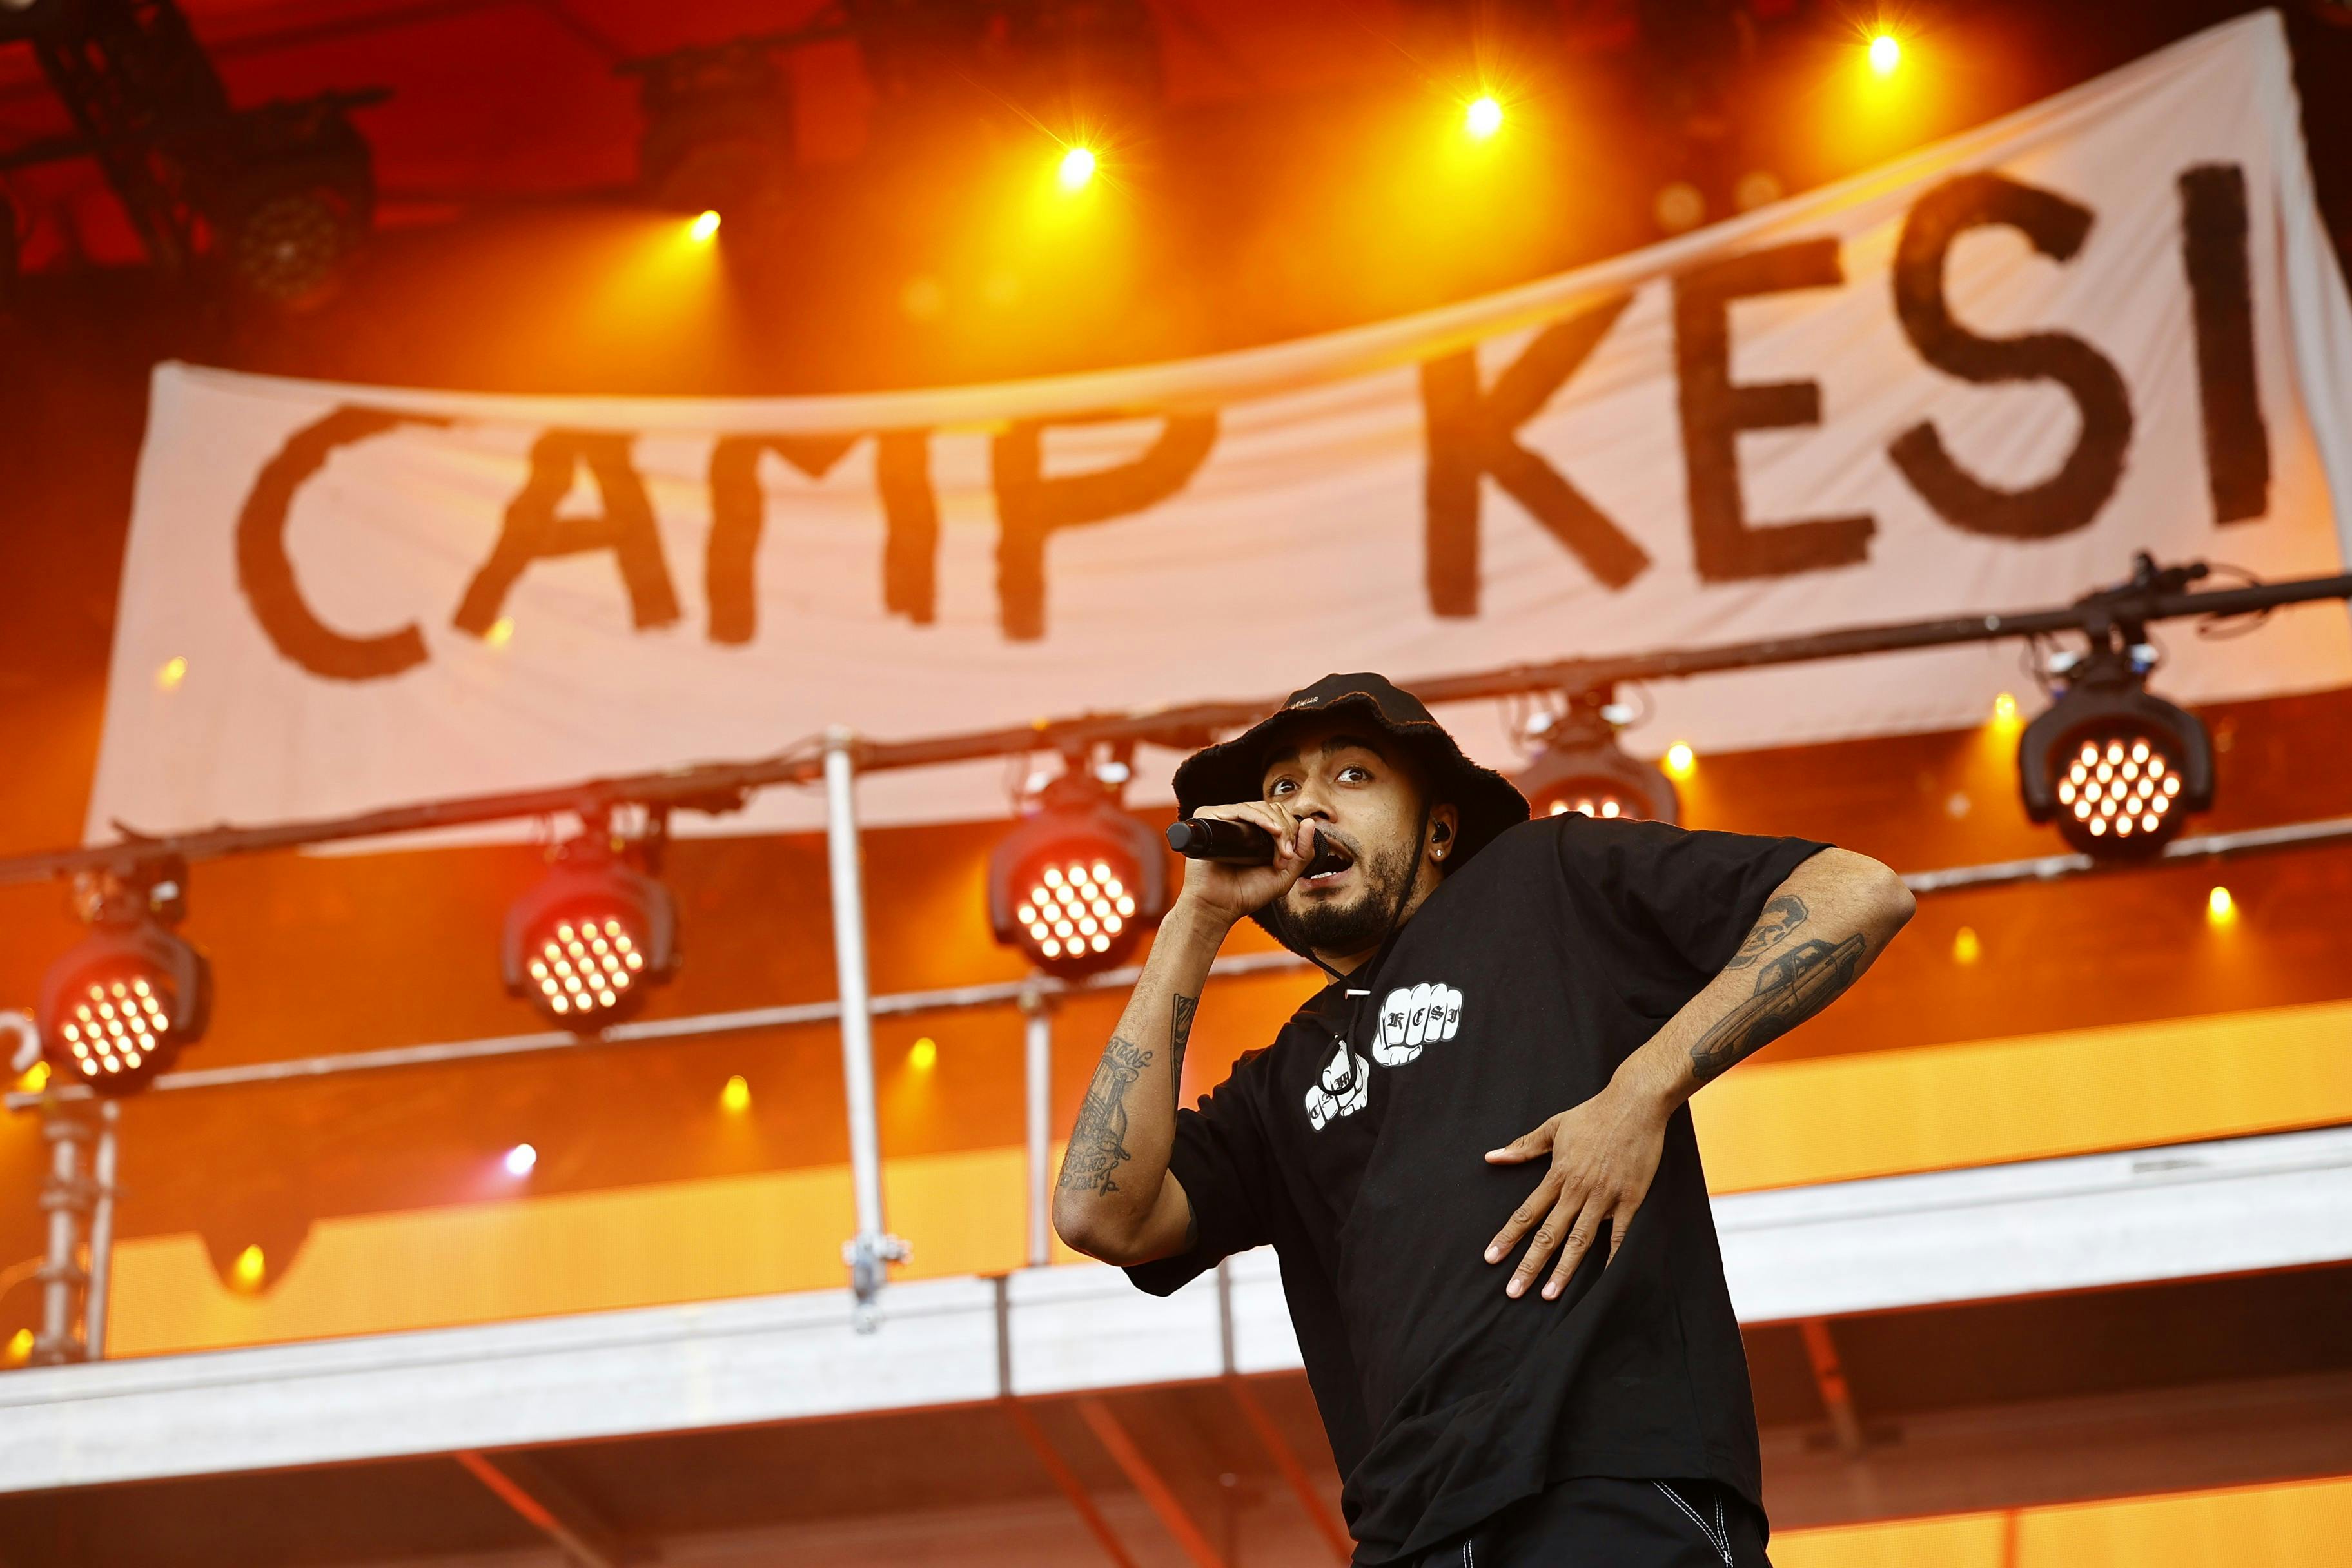 Kesi stod for en af de største fester på Orange Scene sidste år på Roskilde Festival. Nu advarer politiet om billetsvindel op til årets festivalsæson.